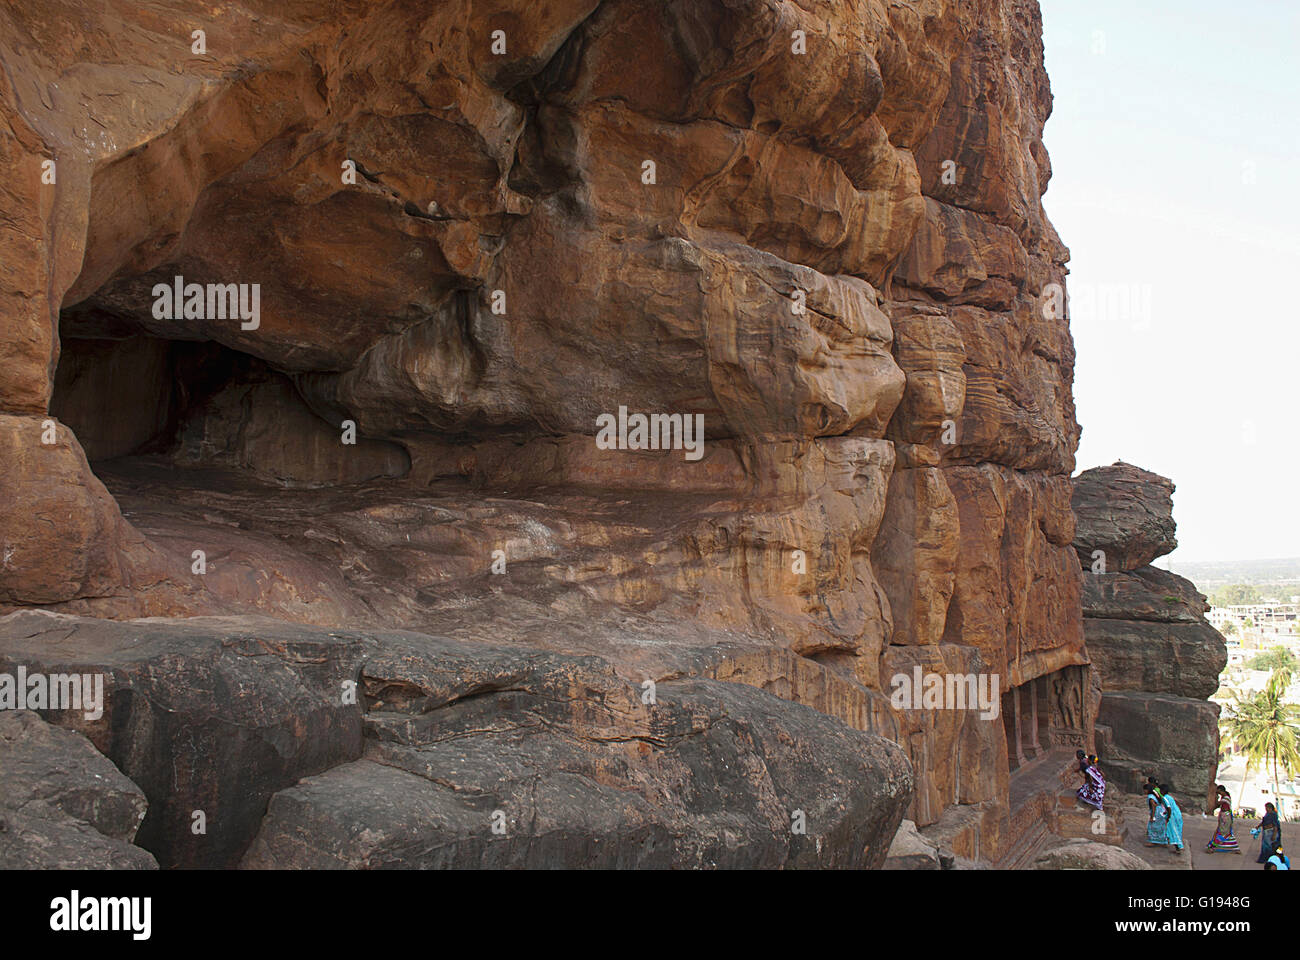 Vue générale, les grottes de Badami, Karnataka, Inde. Grotte inachevé sur la gauche, et les touristes entrant dans la grotte 2 ci-dessous. Banque D'Images